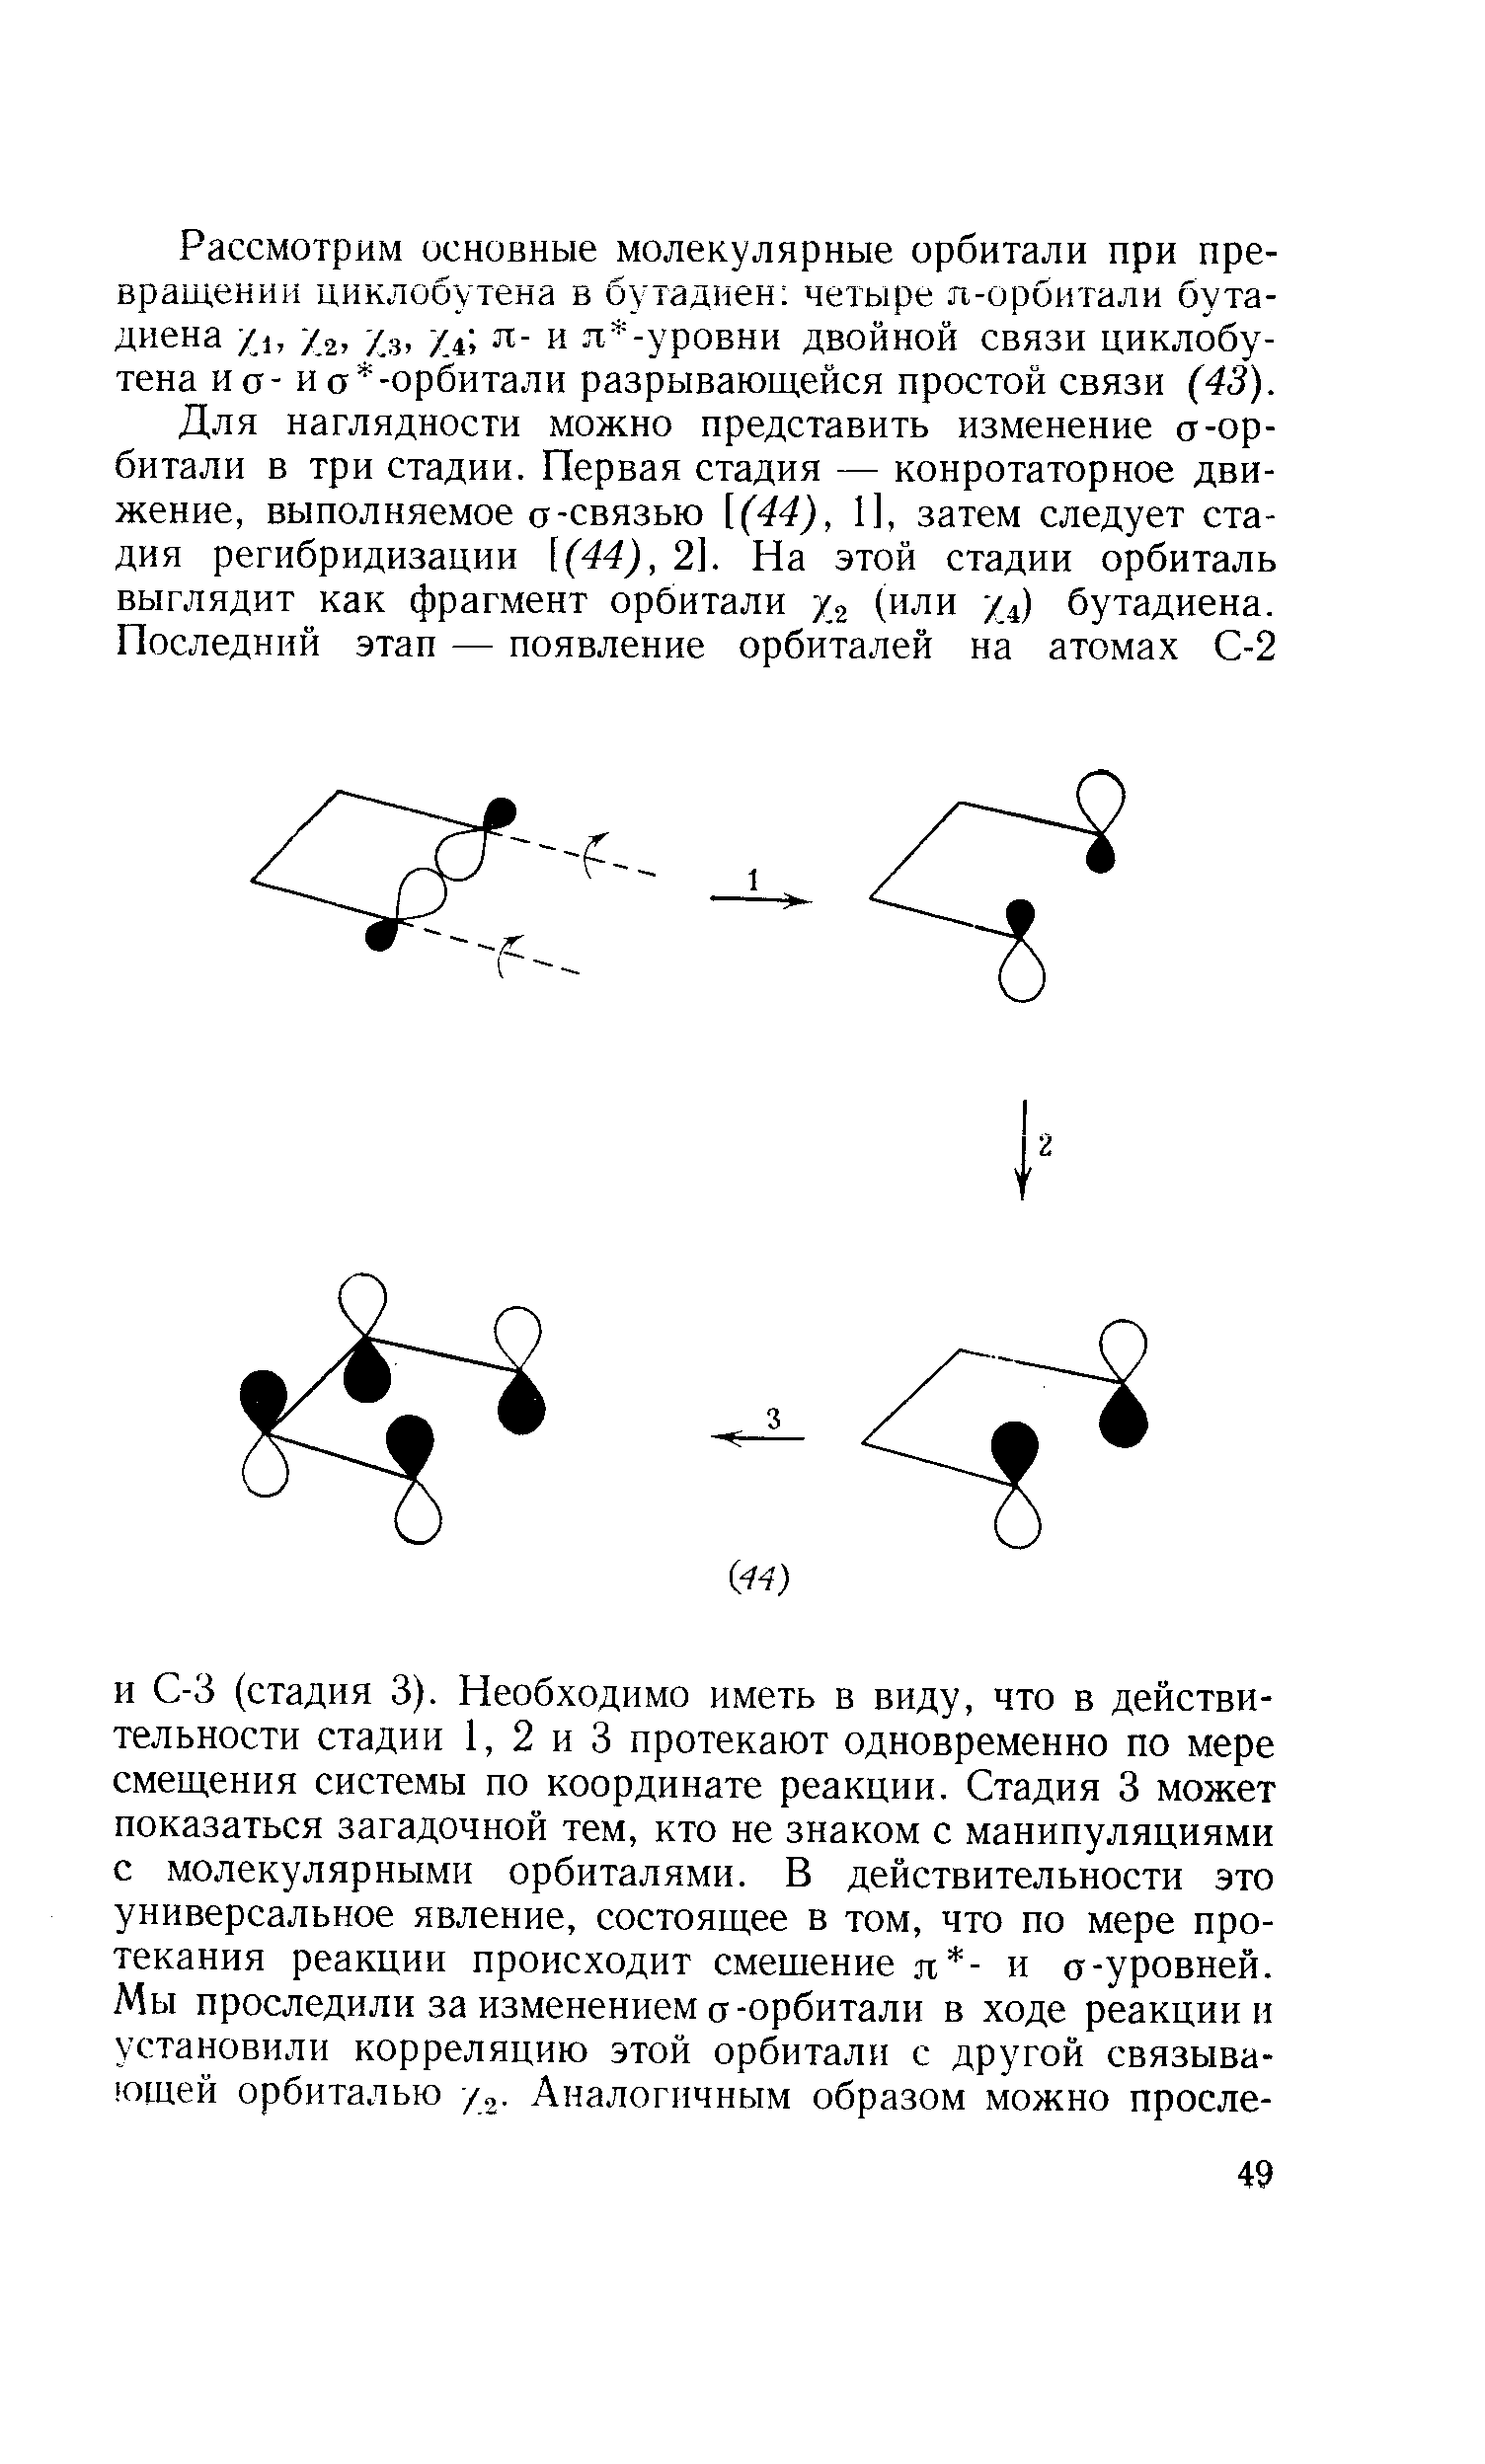 Рассмотрим основные молекулярные орбитали при превращении циклобутена в бутадиен четыре п-орбитали бутадиена /ь /2, 7.3, ул, я- и л -уровни двойной связи циклобутена и а- ио -орбитали разрывающейся простой связи (43).